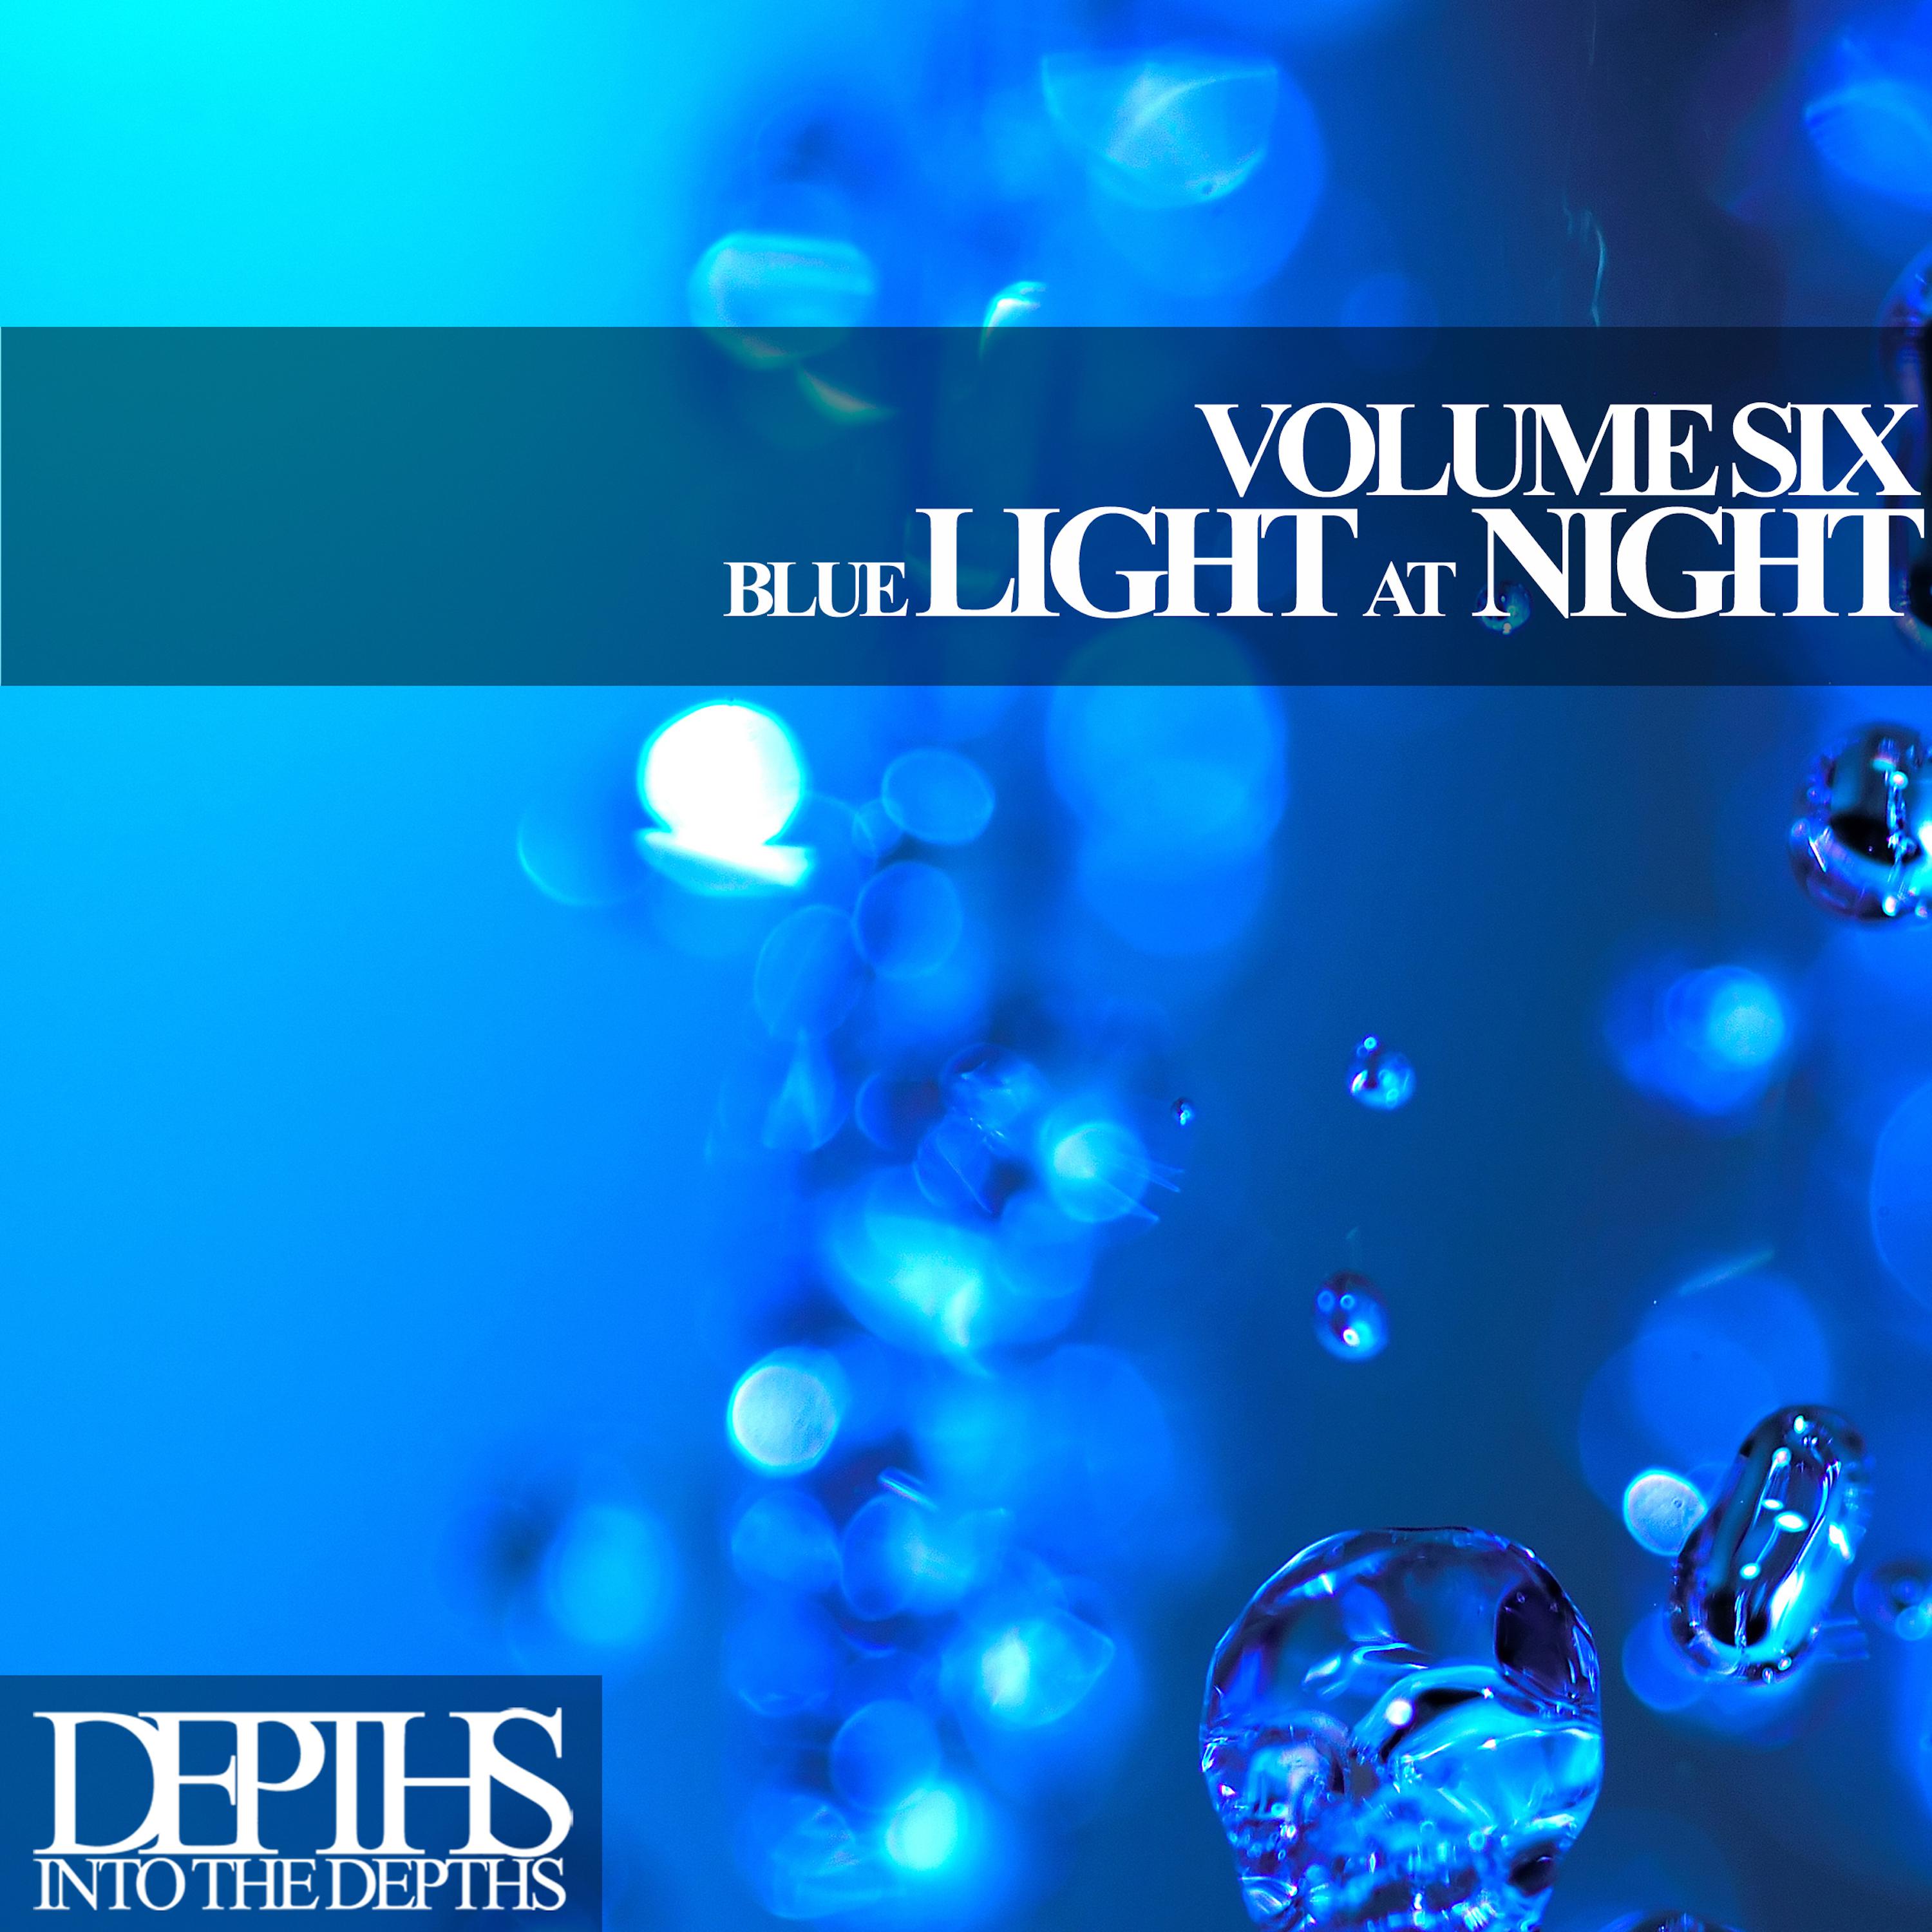 Blue Light At Night, Vol. Six - First Class Deep House Blends